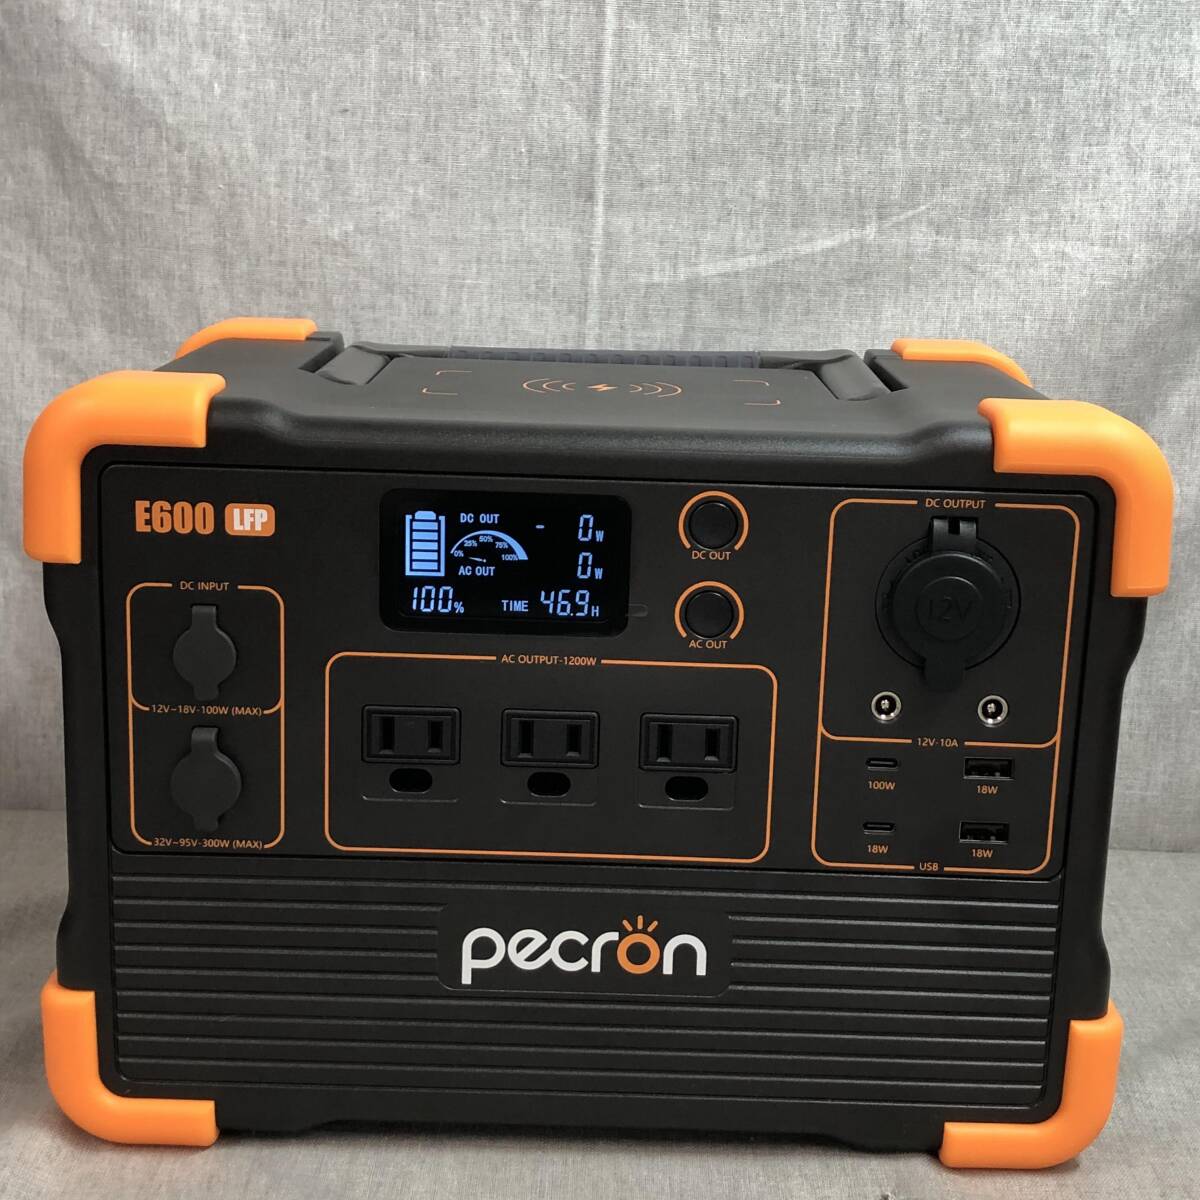 PECRON portable power supply E600LFP 1200W / 614Wh small size high capacity 